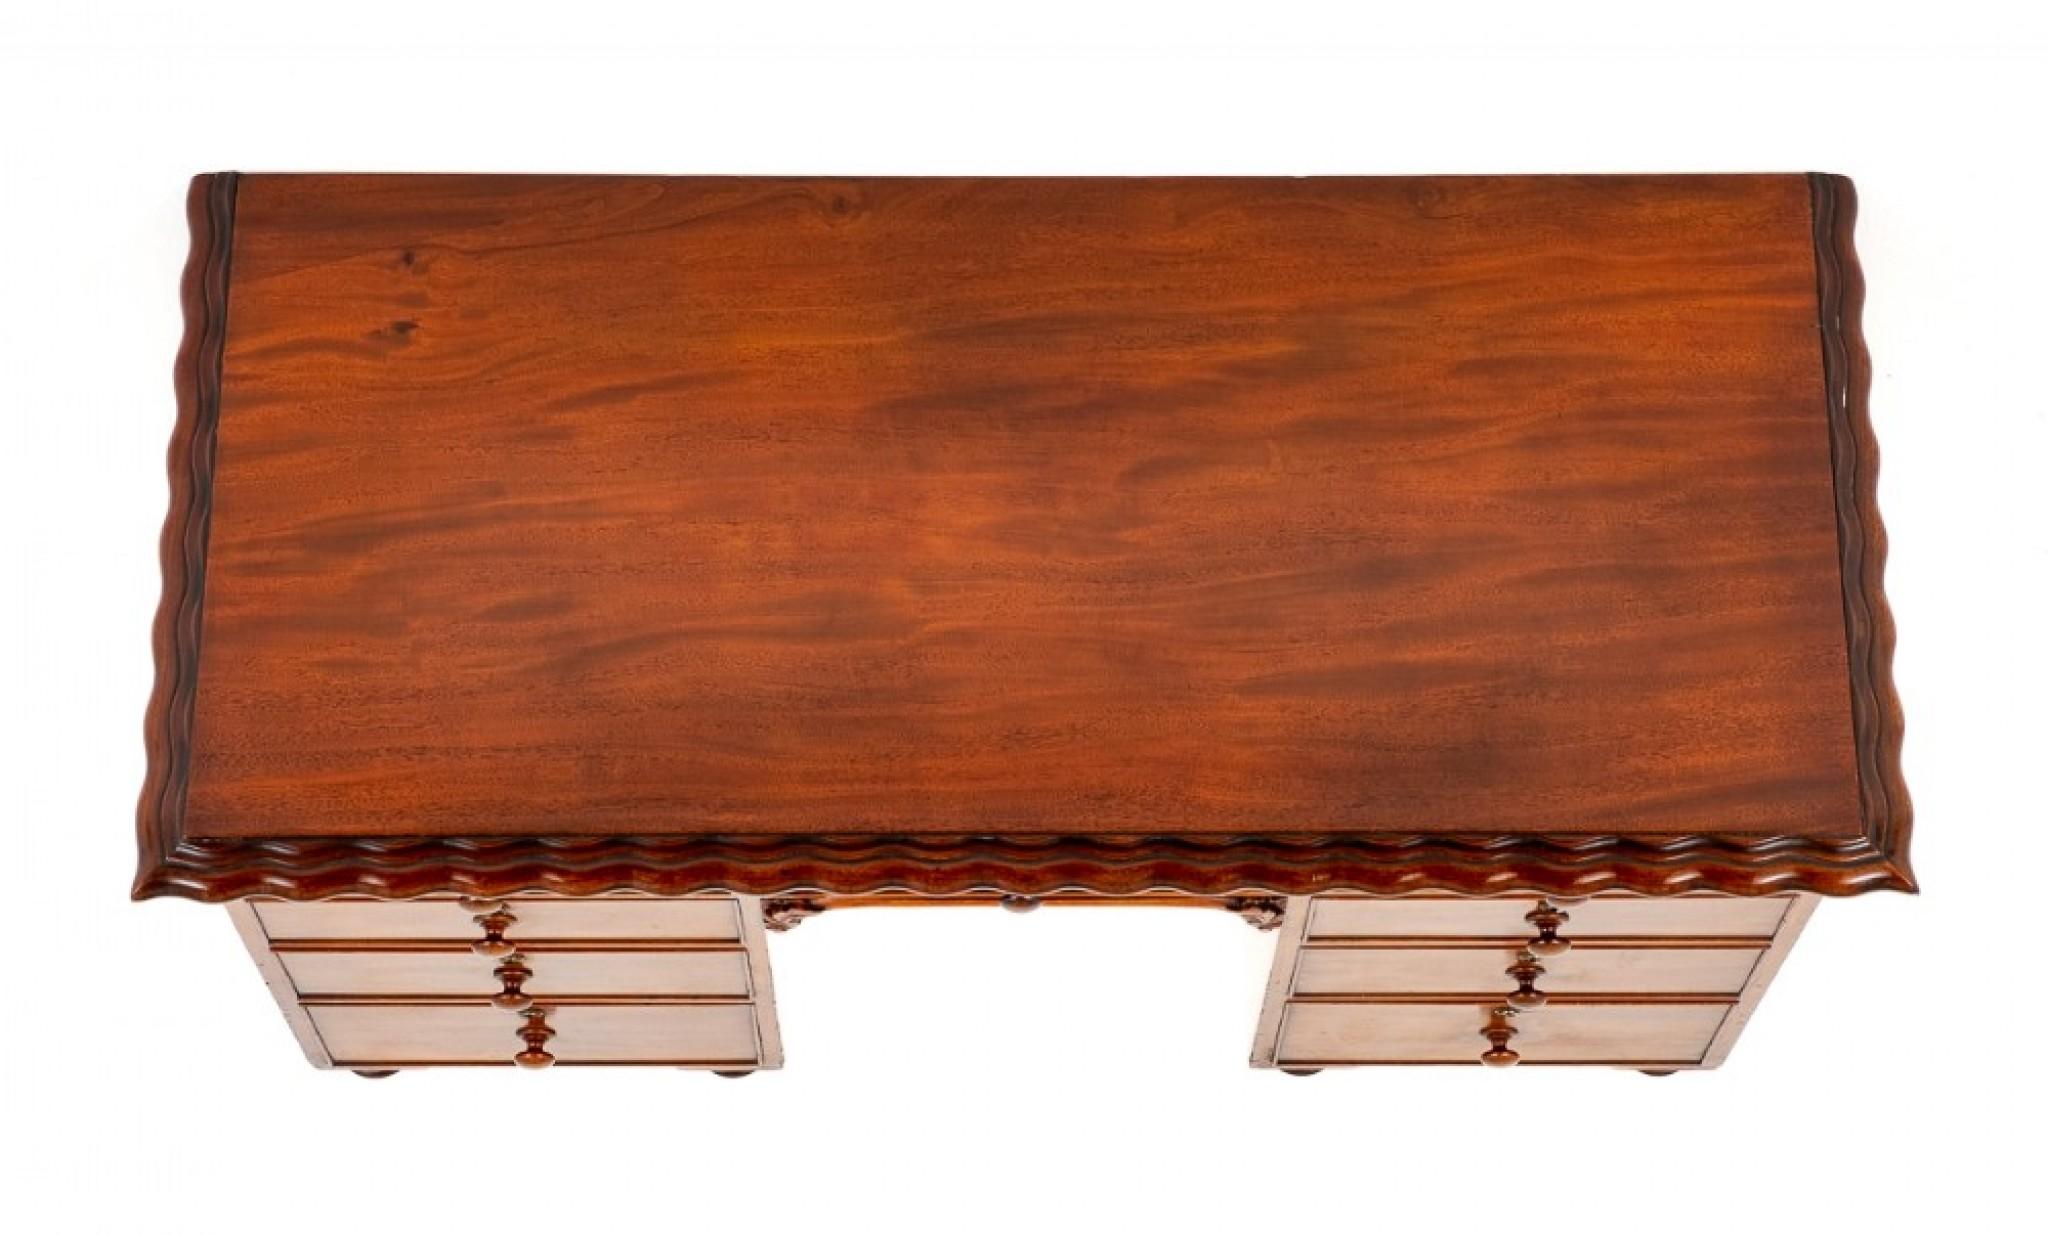 Viktorianischer Mahagoni-Schreibtisch mit 9 Schubladen.
Dieser Schreibtisch steht auf gedrechselten Bun-Füßen.
CIRCA 1850
Mit einer Anordnung von 9 mahagonigefütterten Schubladen.
Die Schubladen behalten ihre originalen gedrehten Knöpfe.
Die